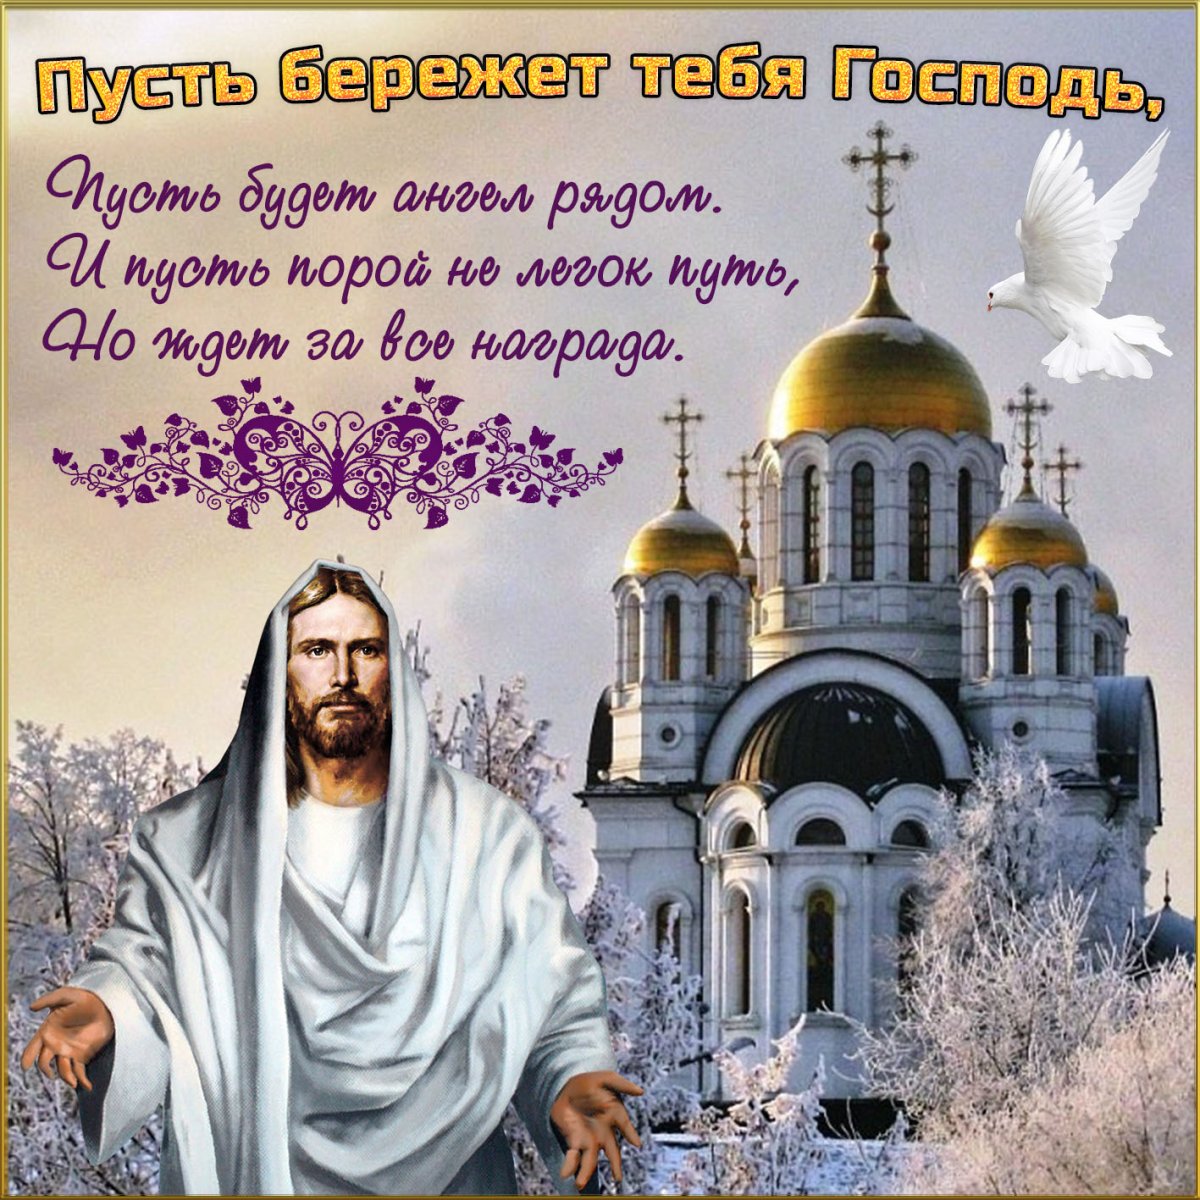 Пожелания к православным праздникам